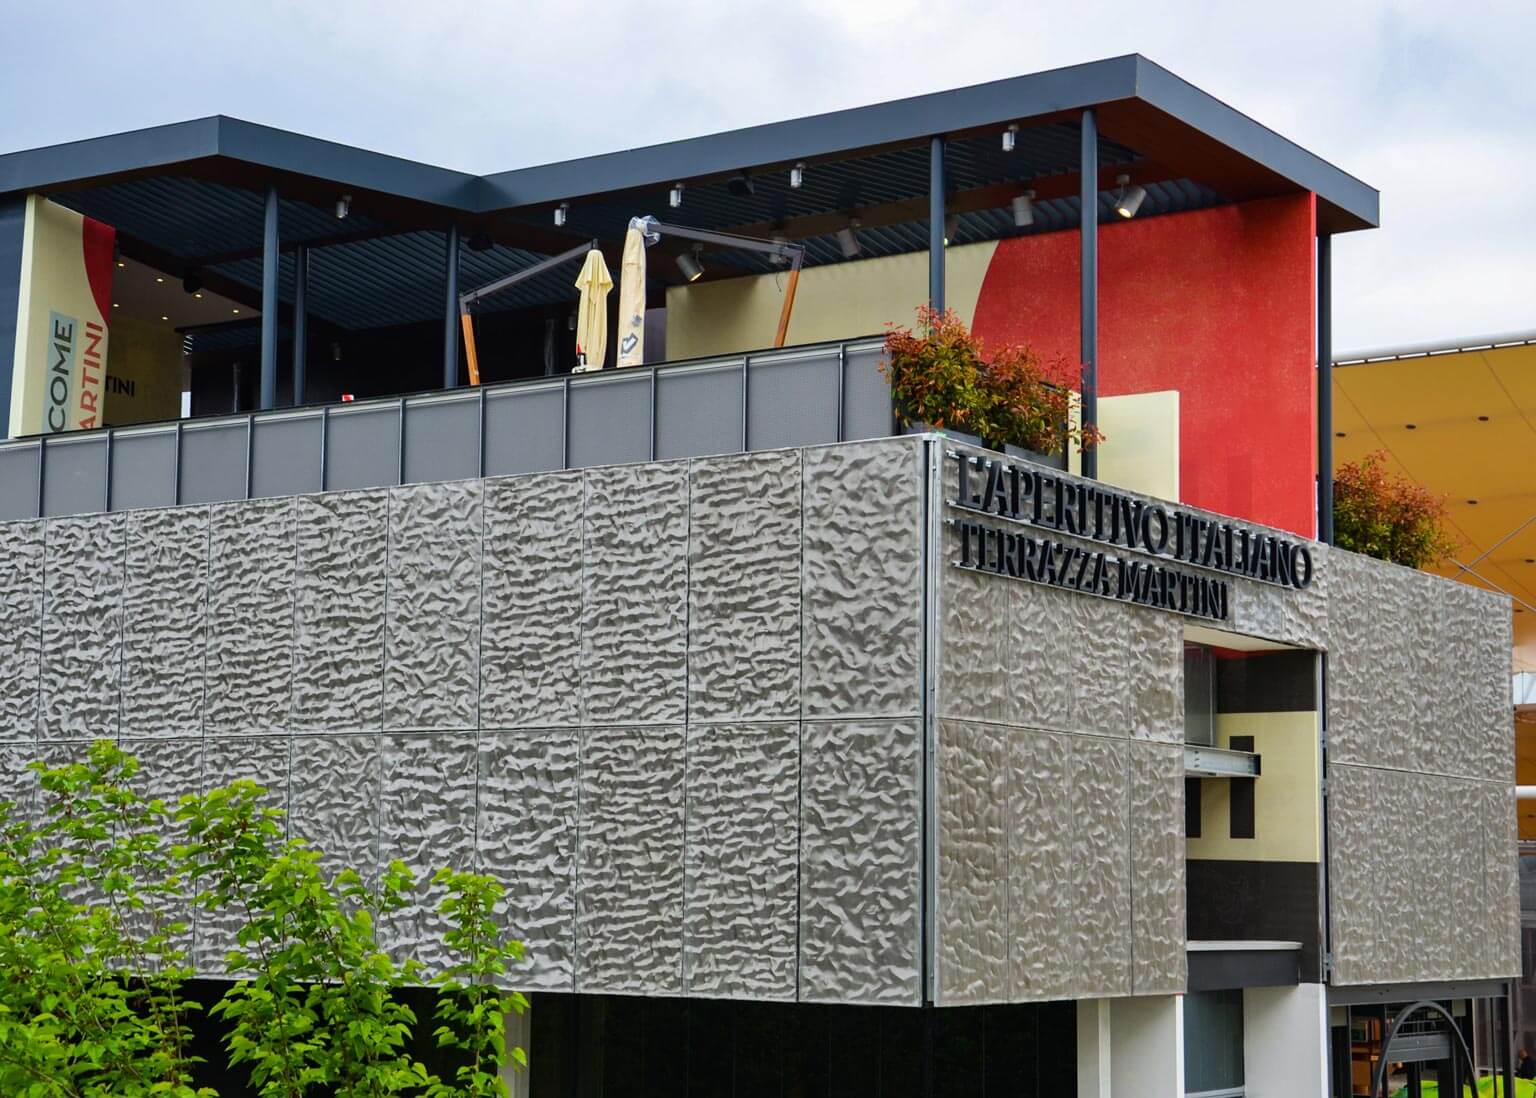 dettaglio terrazza martini expo 2015 milan carpenteria metallica pergolato tecnologico finitura legno lamiera opere specialistiche in cartongesso Bazzea